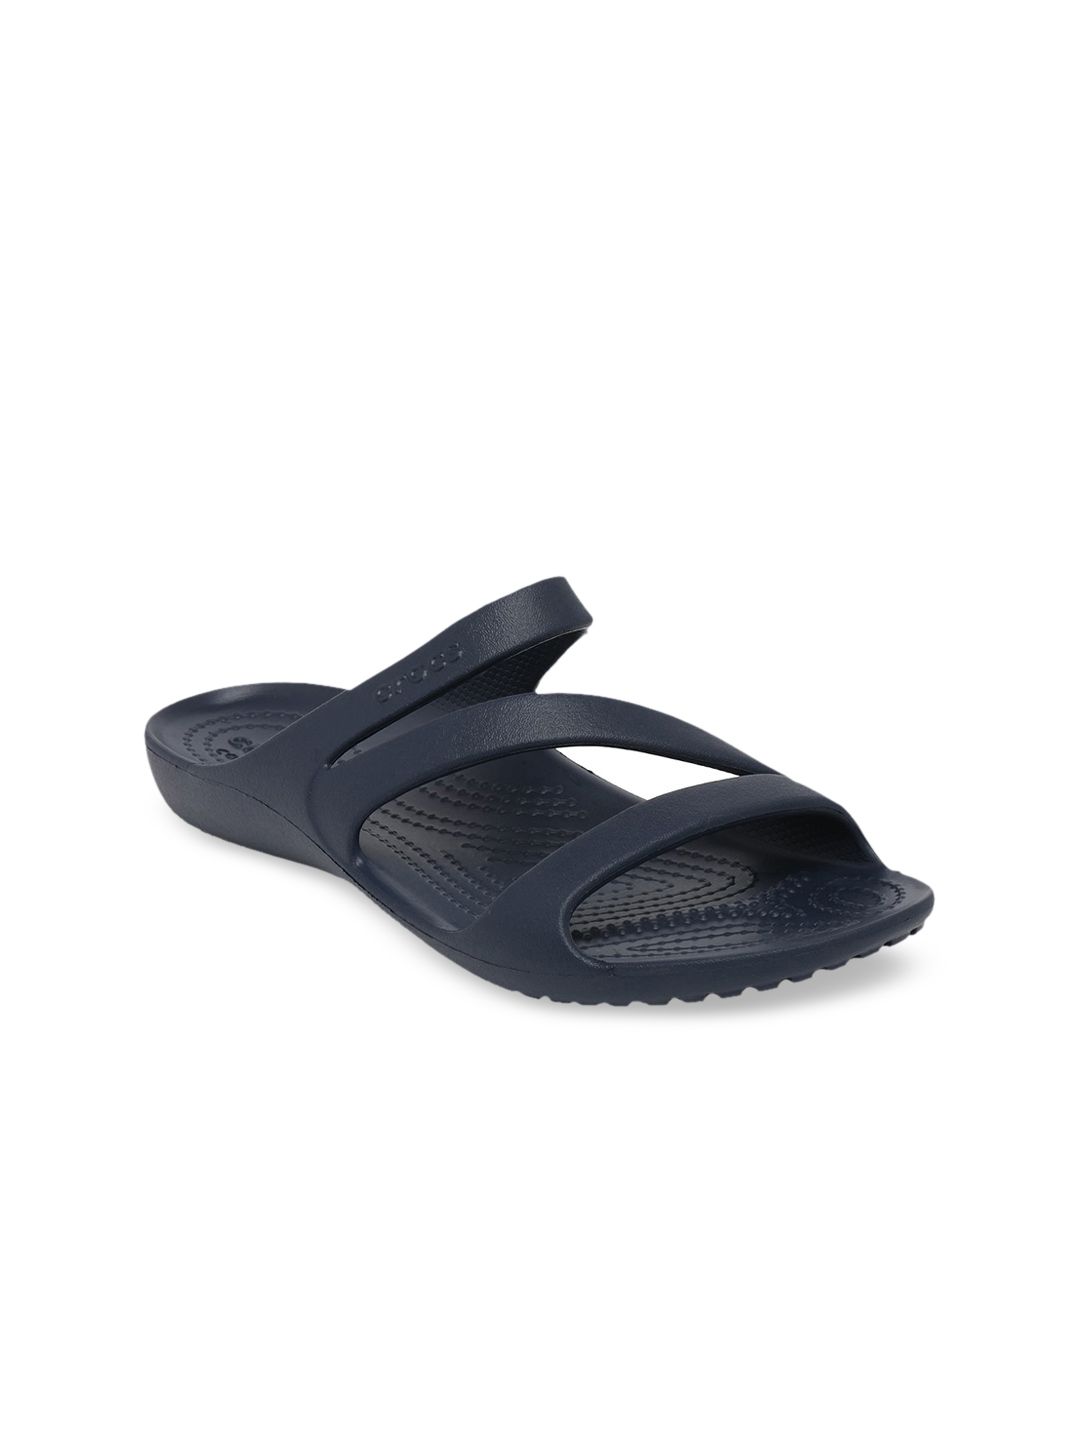 Crocs Kadee  Women Navy Blue Solid Comfort Sandals Price in India